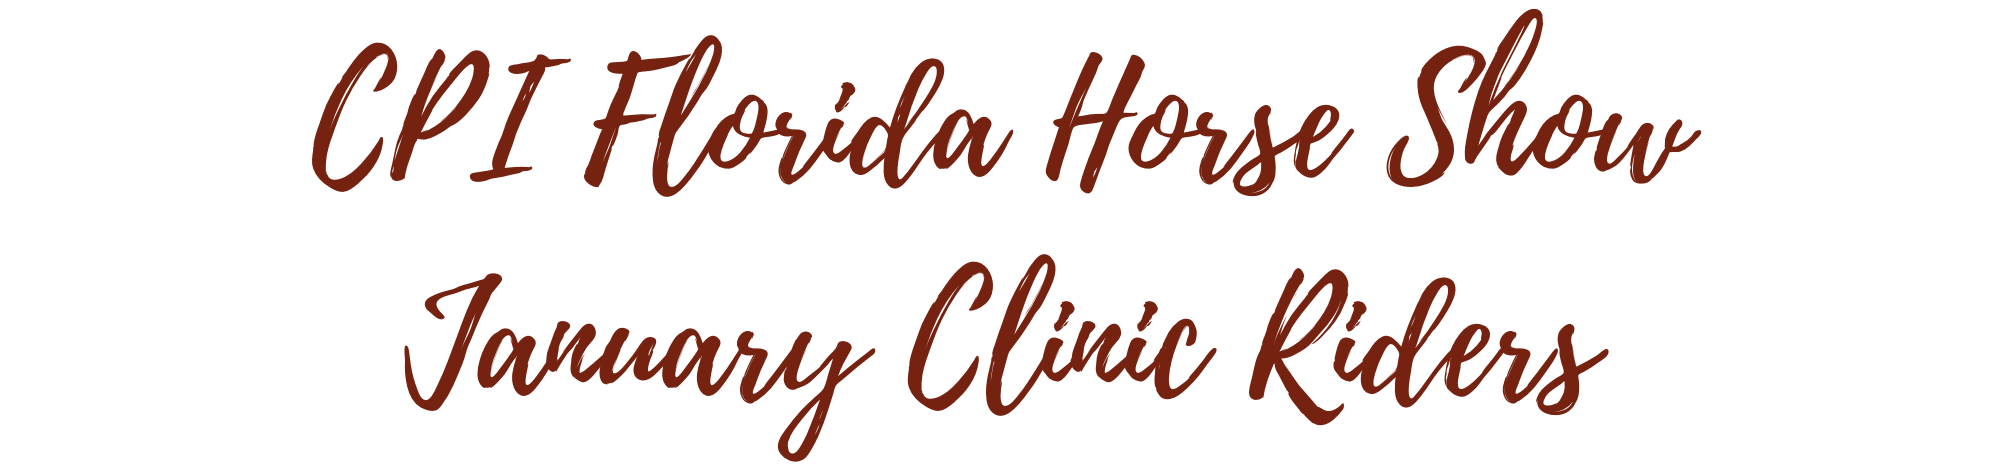 CPI Florida January Clinic Riders